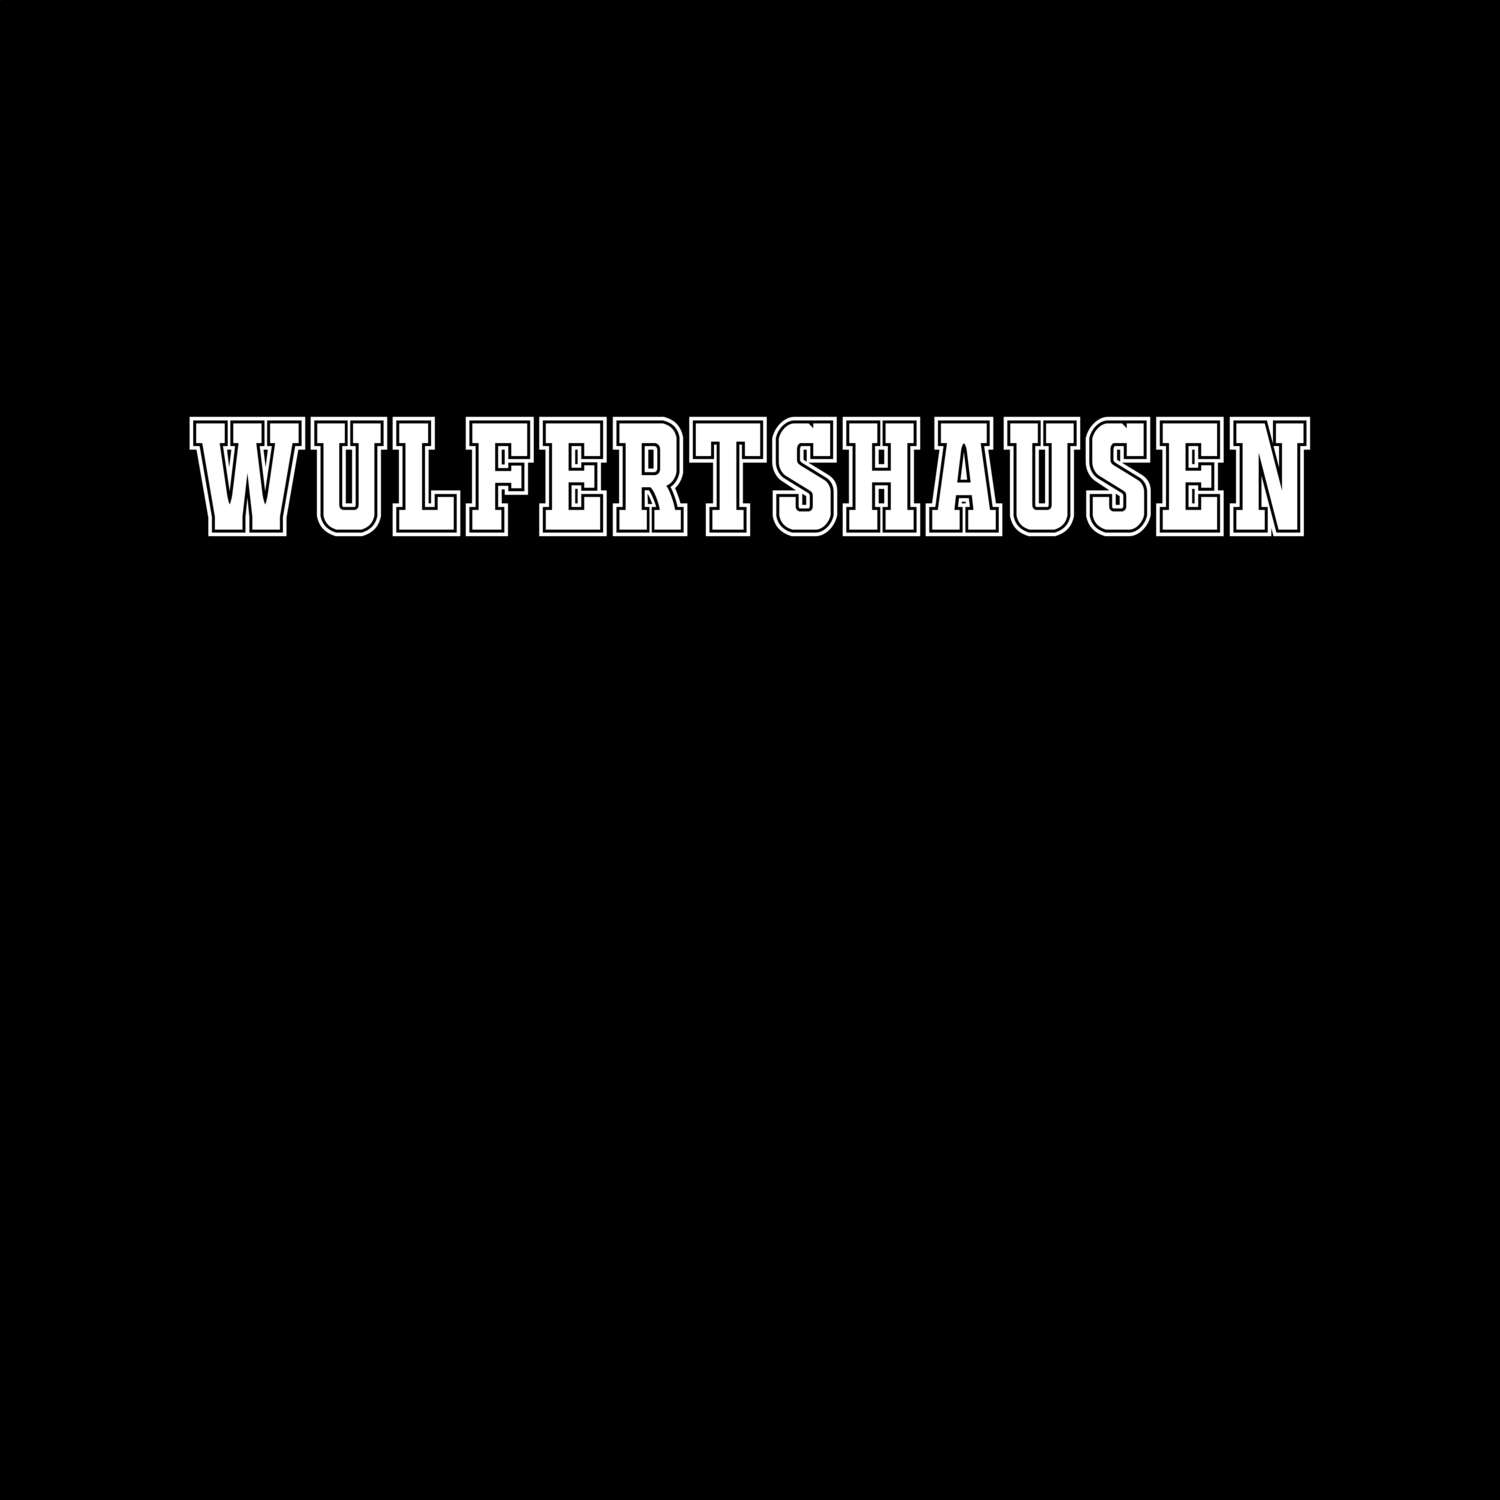 Wulfertshausen T-Shirt »Classic«